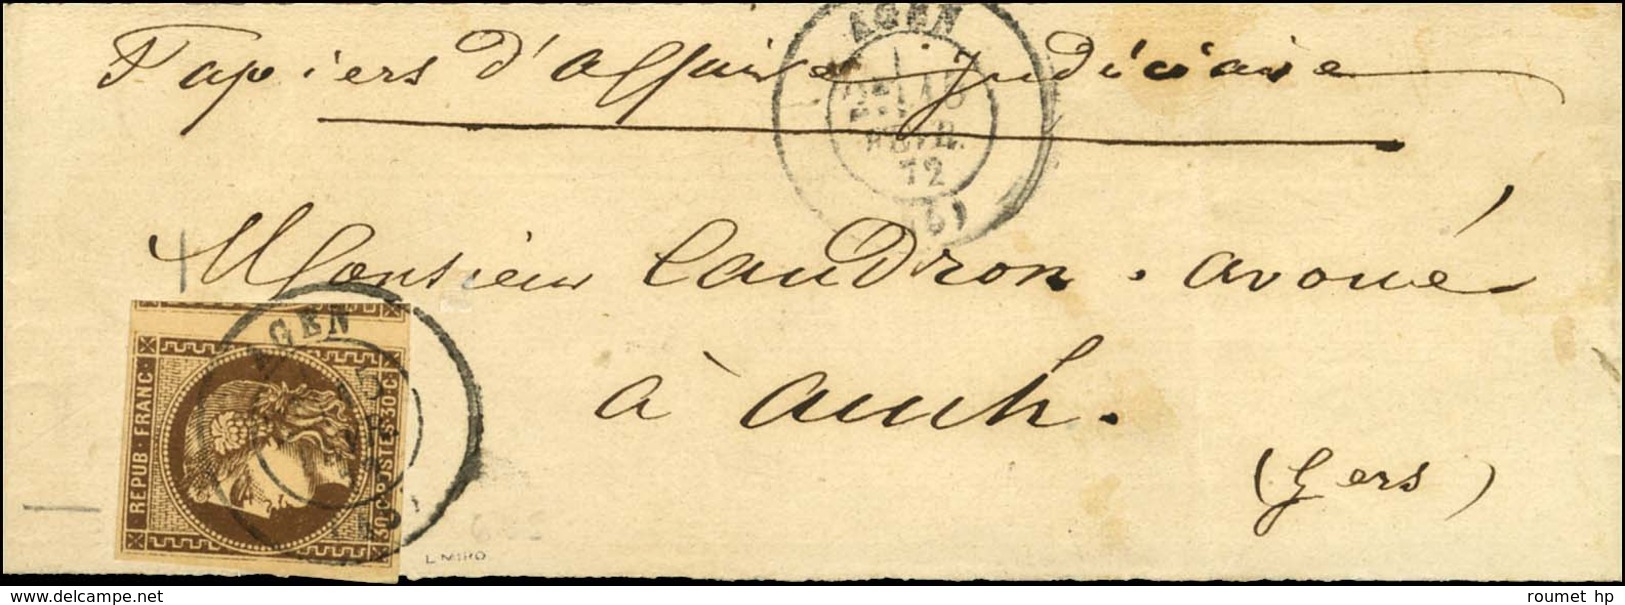 Càd T 17 AGEN (45) / N° 47 Sur Bande De Papier D'affaires Pour Auch. Au Verso, Càd D'arrivée 1872. - TB / SUP. - R. - 1870 Bordeaux Printing